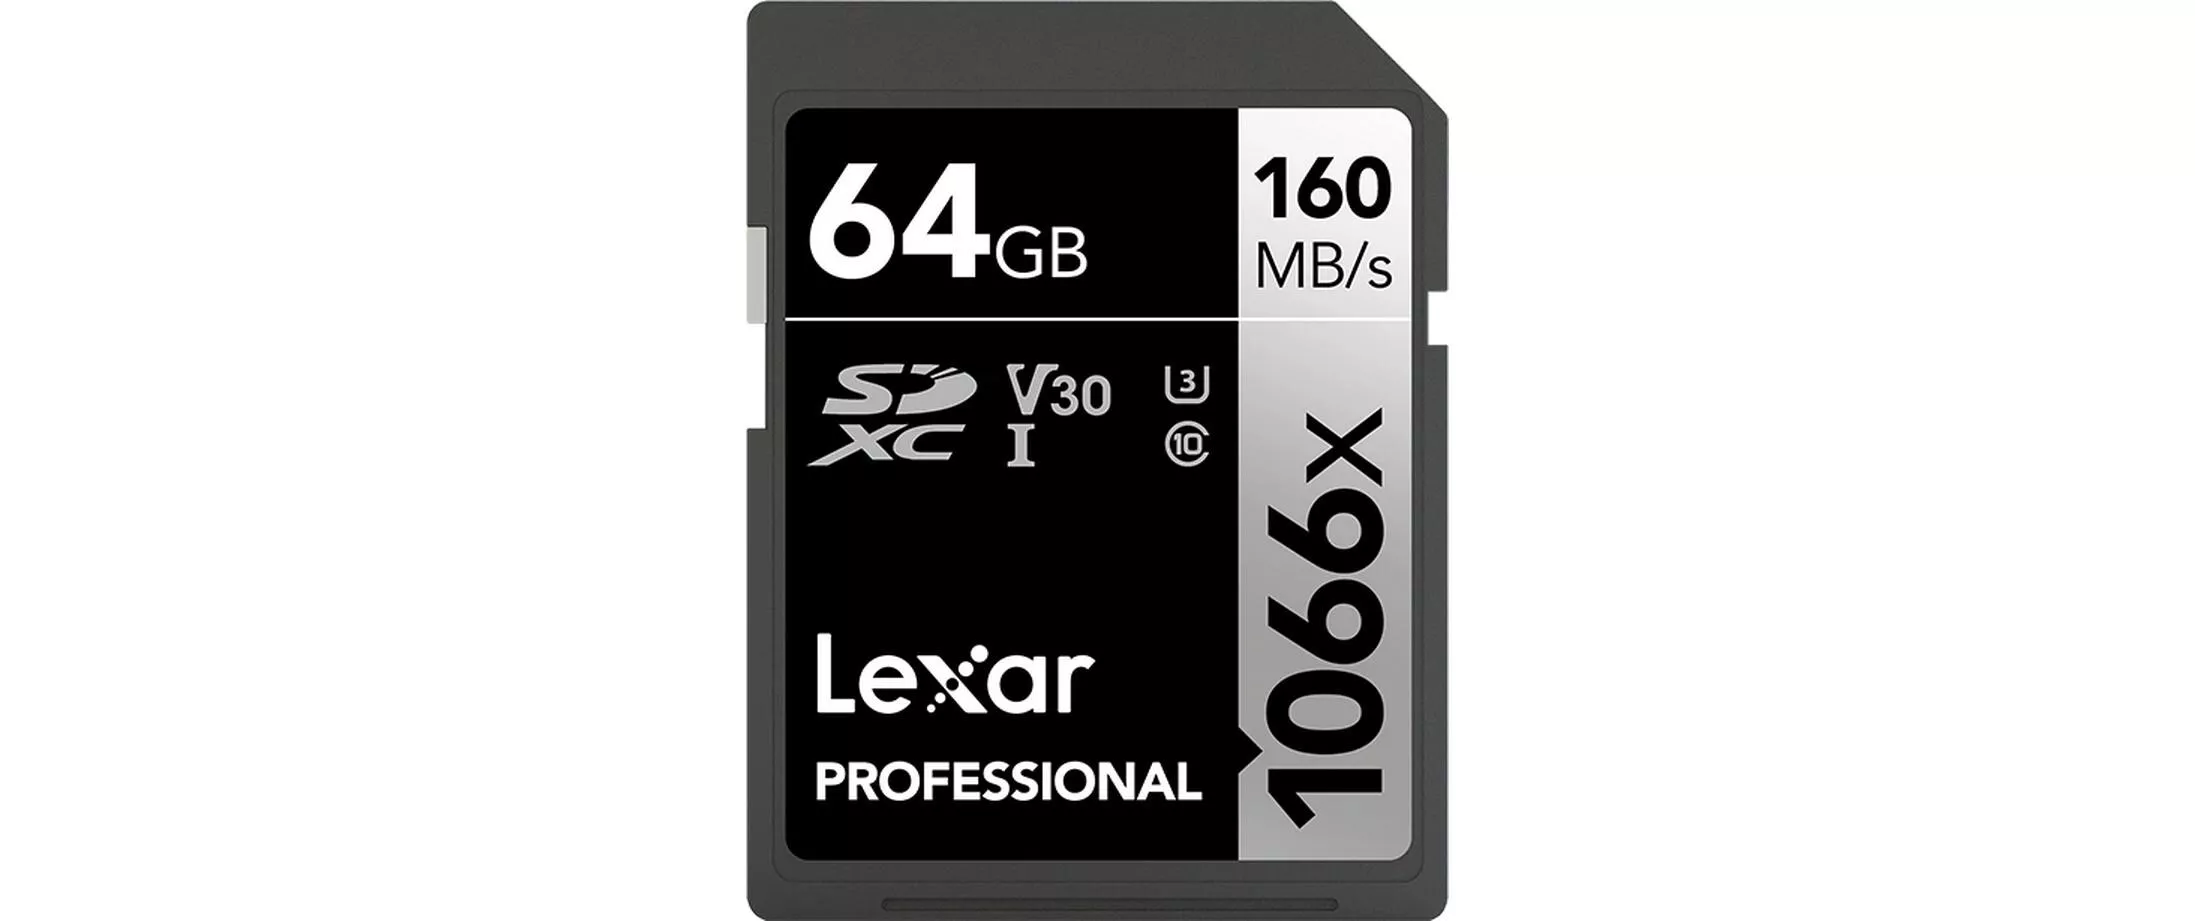 SDXC-Karte Professional 1066x Silver 64 GB